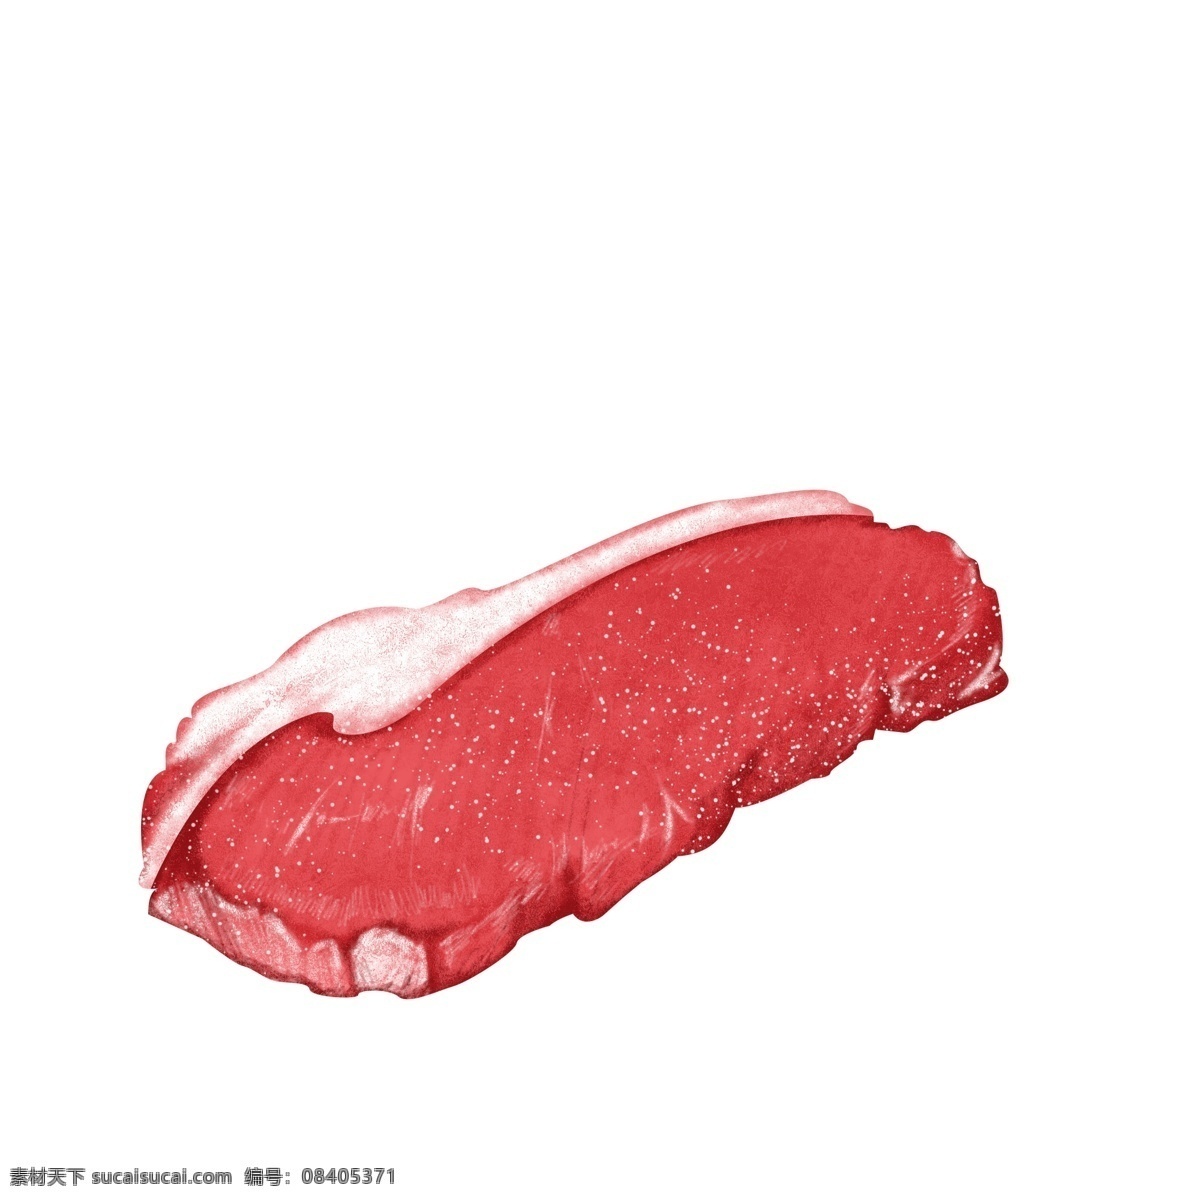 红色 肉类 猪肉 猪排 食 材 美食 美味 手绘 写实 免 扣 食材 免扣 新鲜 鲜肉 烹饪 诱人 鲜美